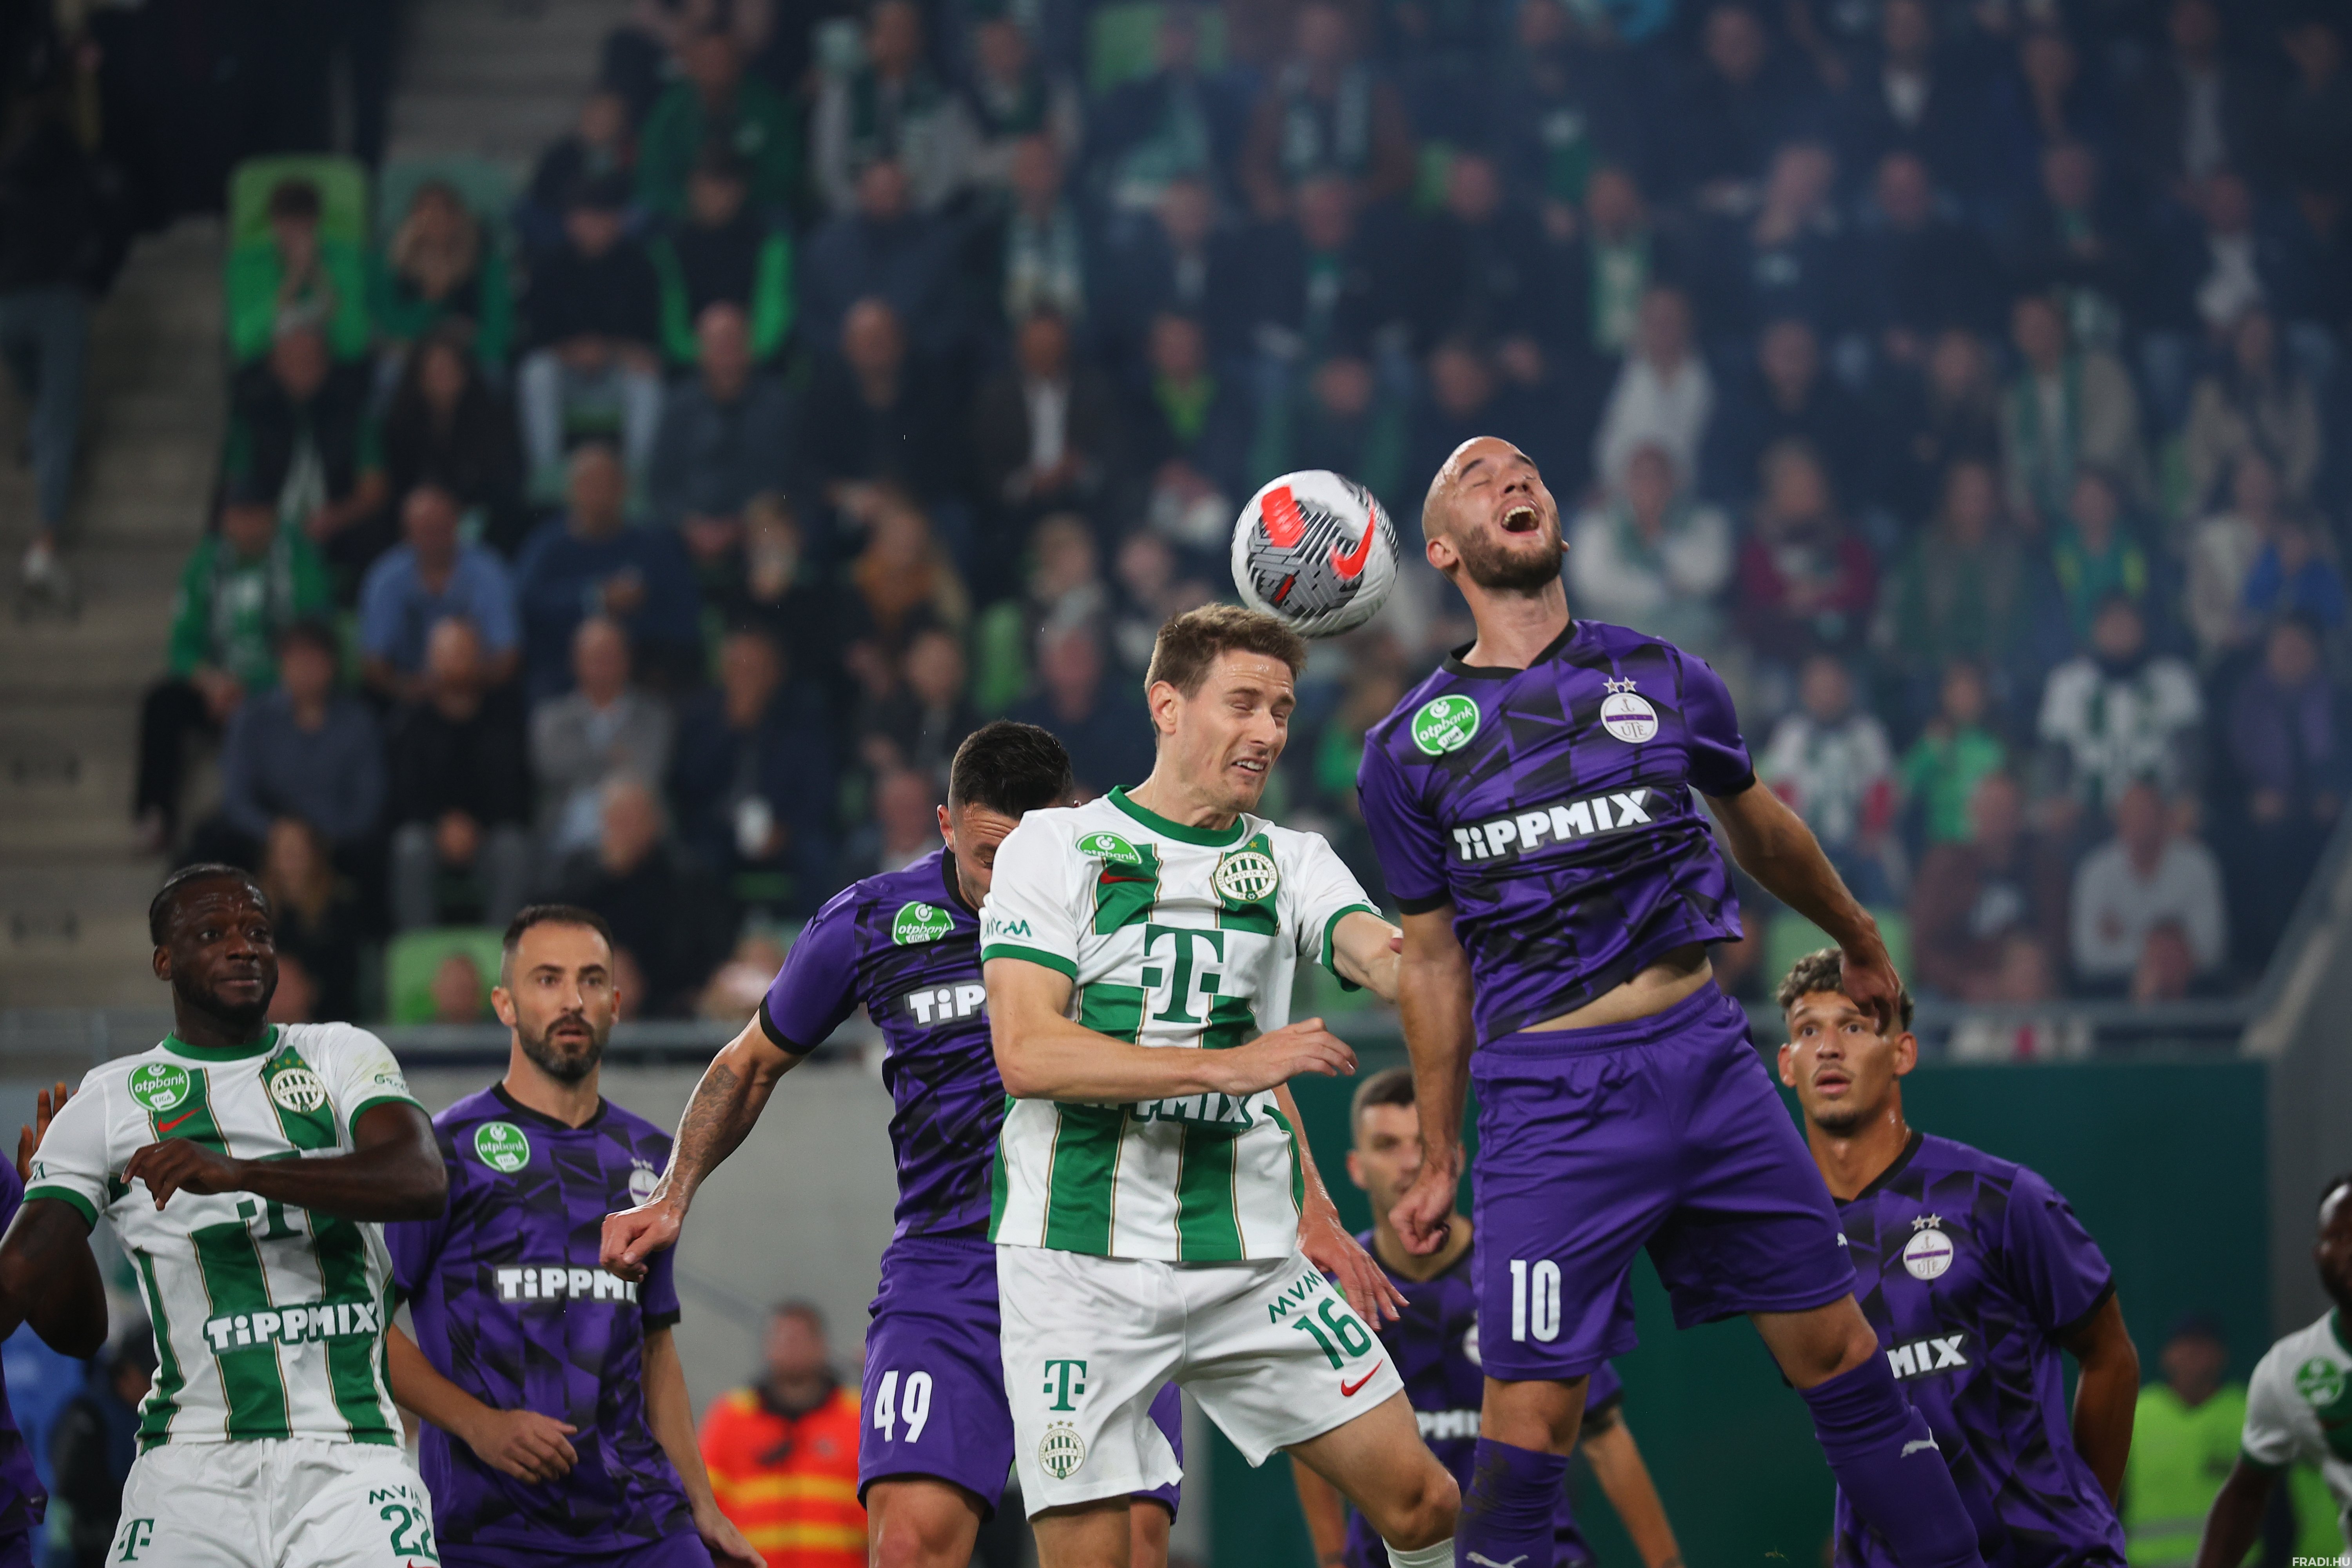 Ferencvárosi TC - Újpest FC: A magyar labdarúgás örökrangadója -  Sportfogadás